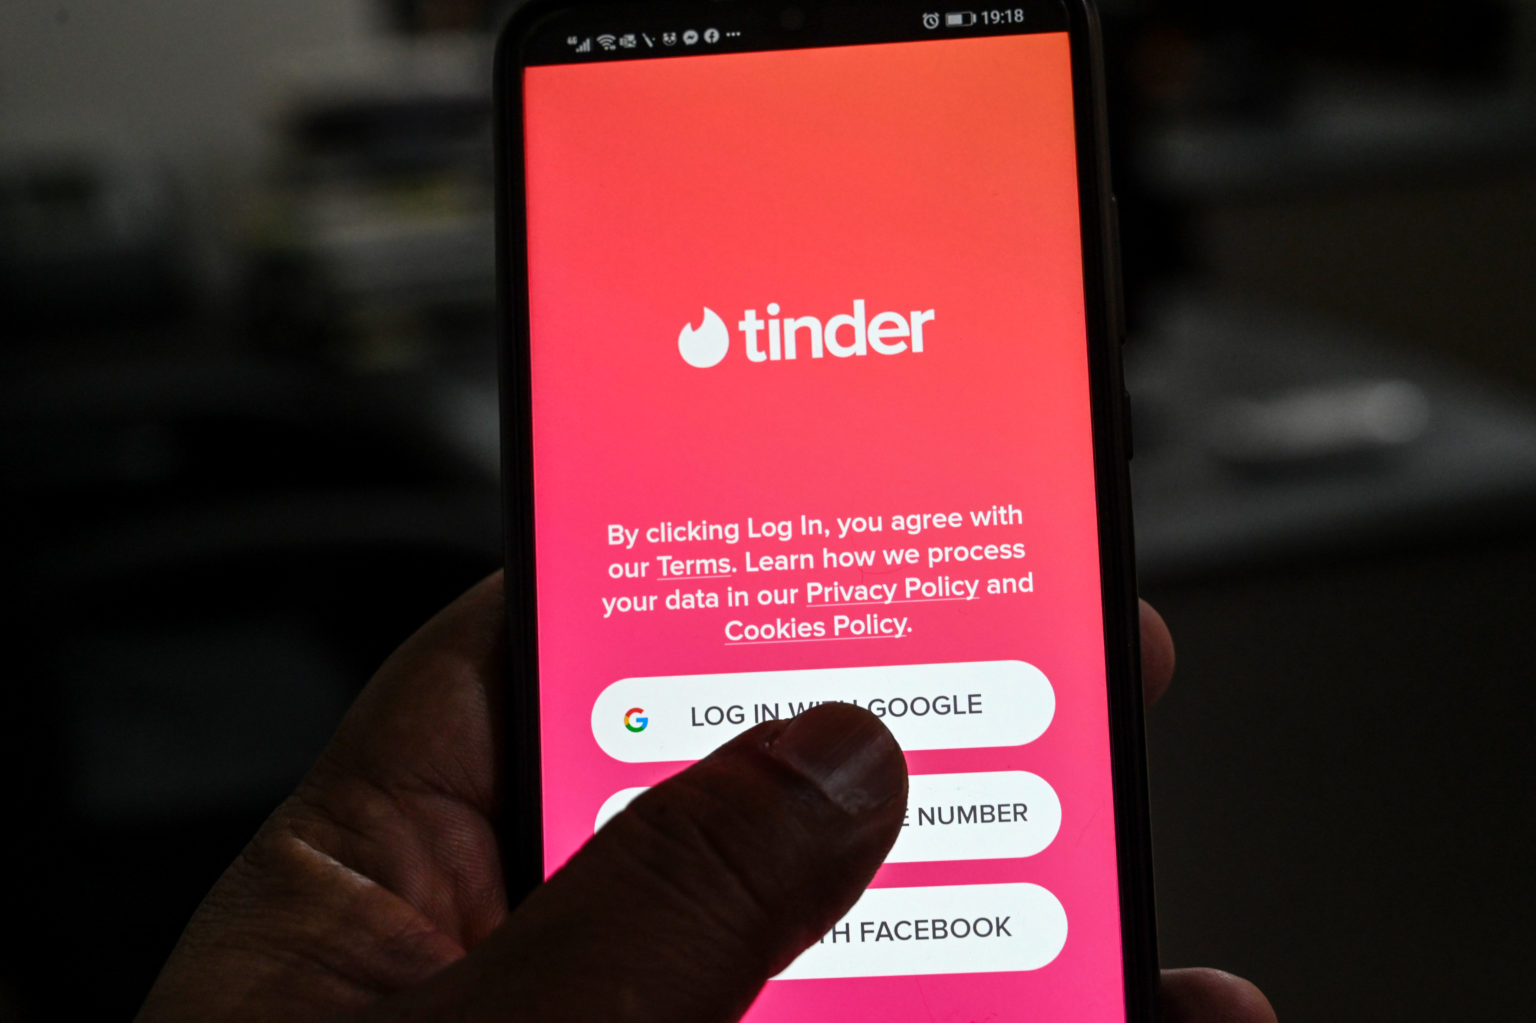 Mobile dating apps kanada